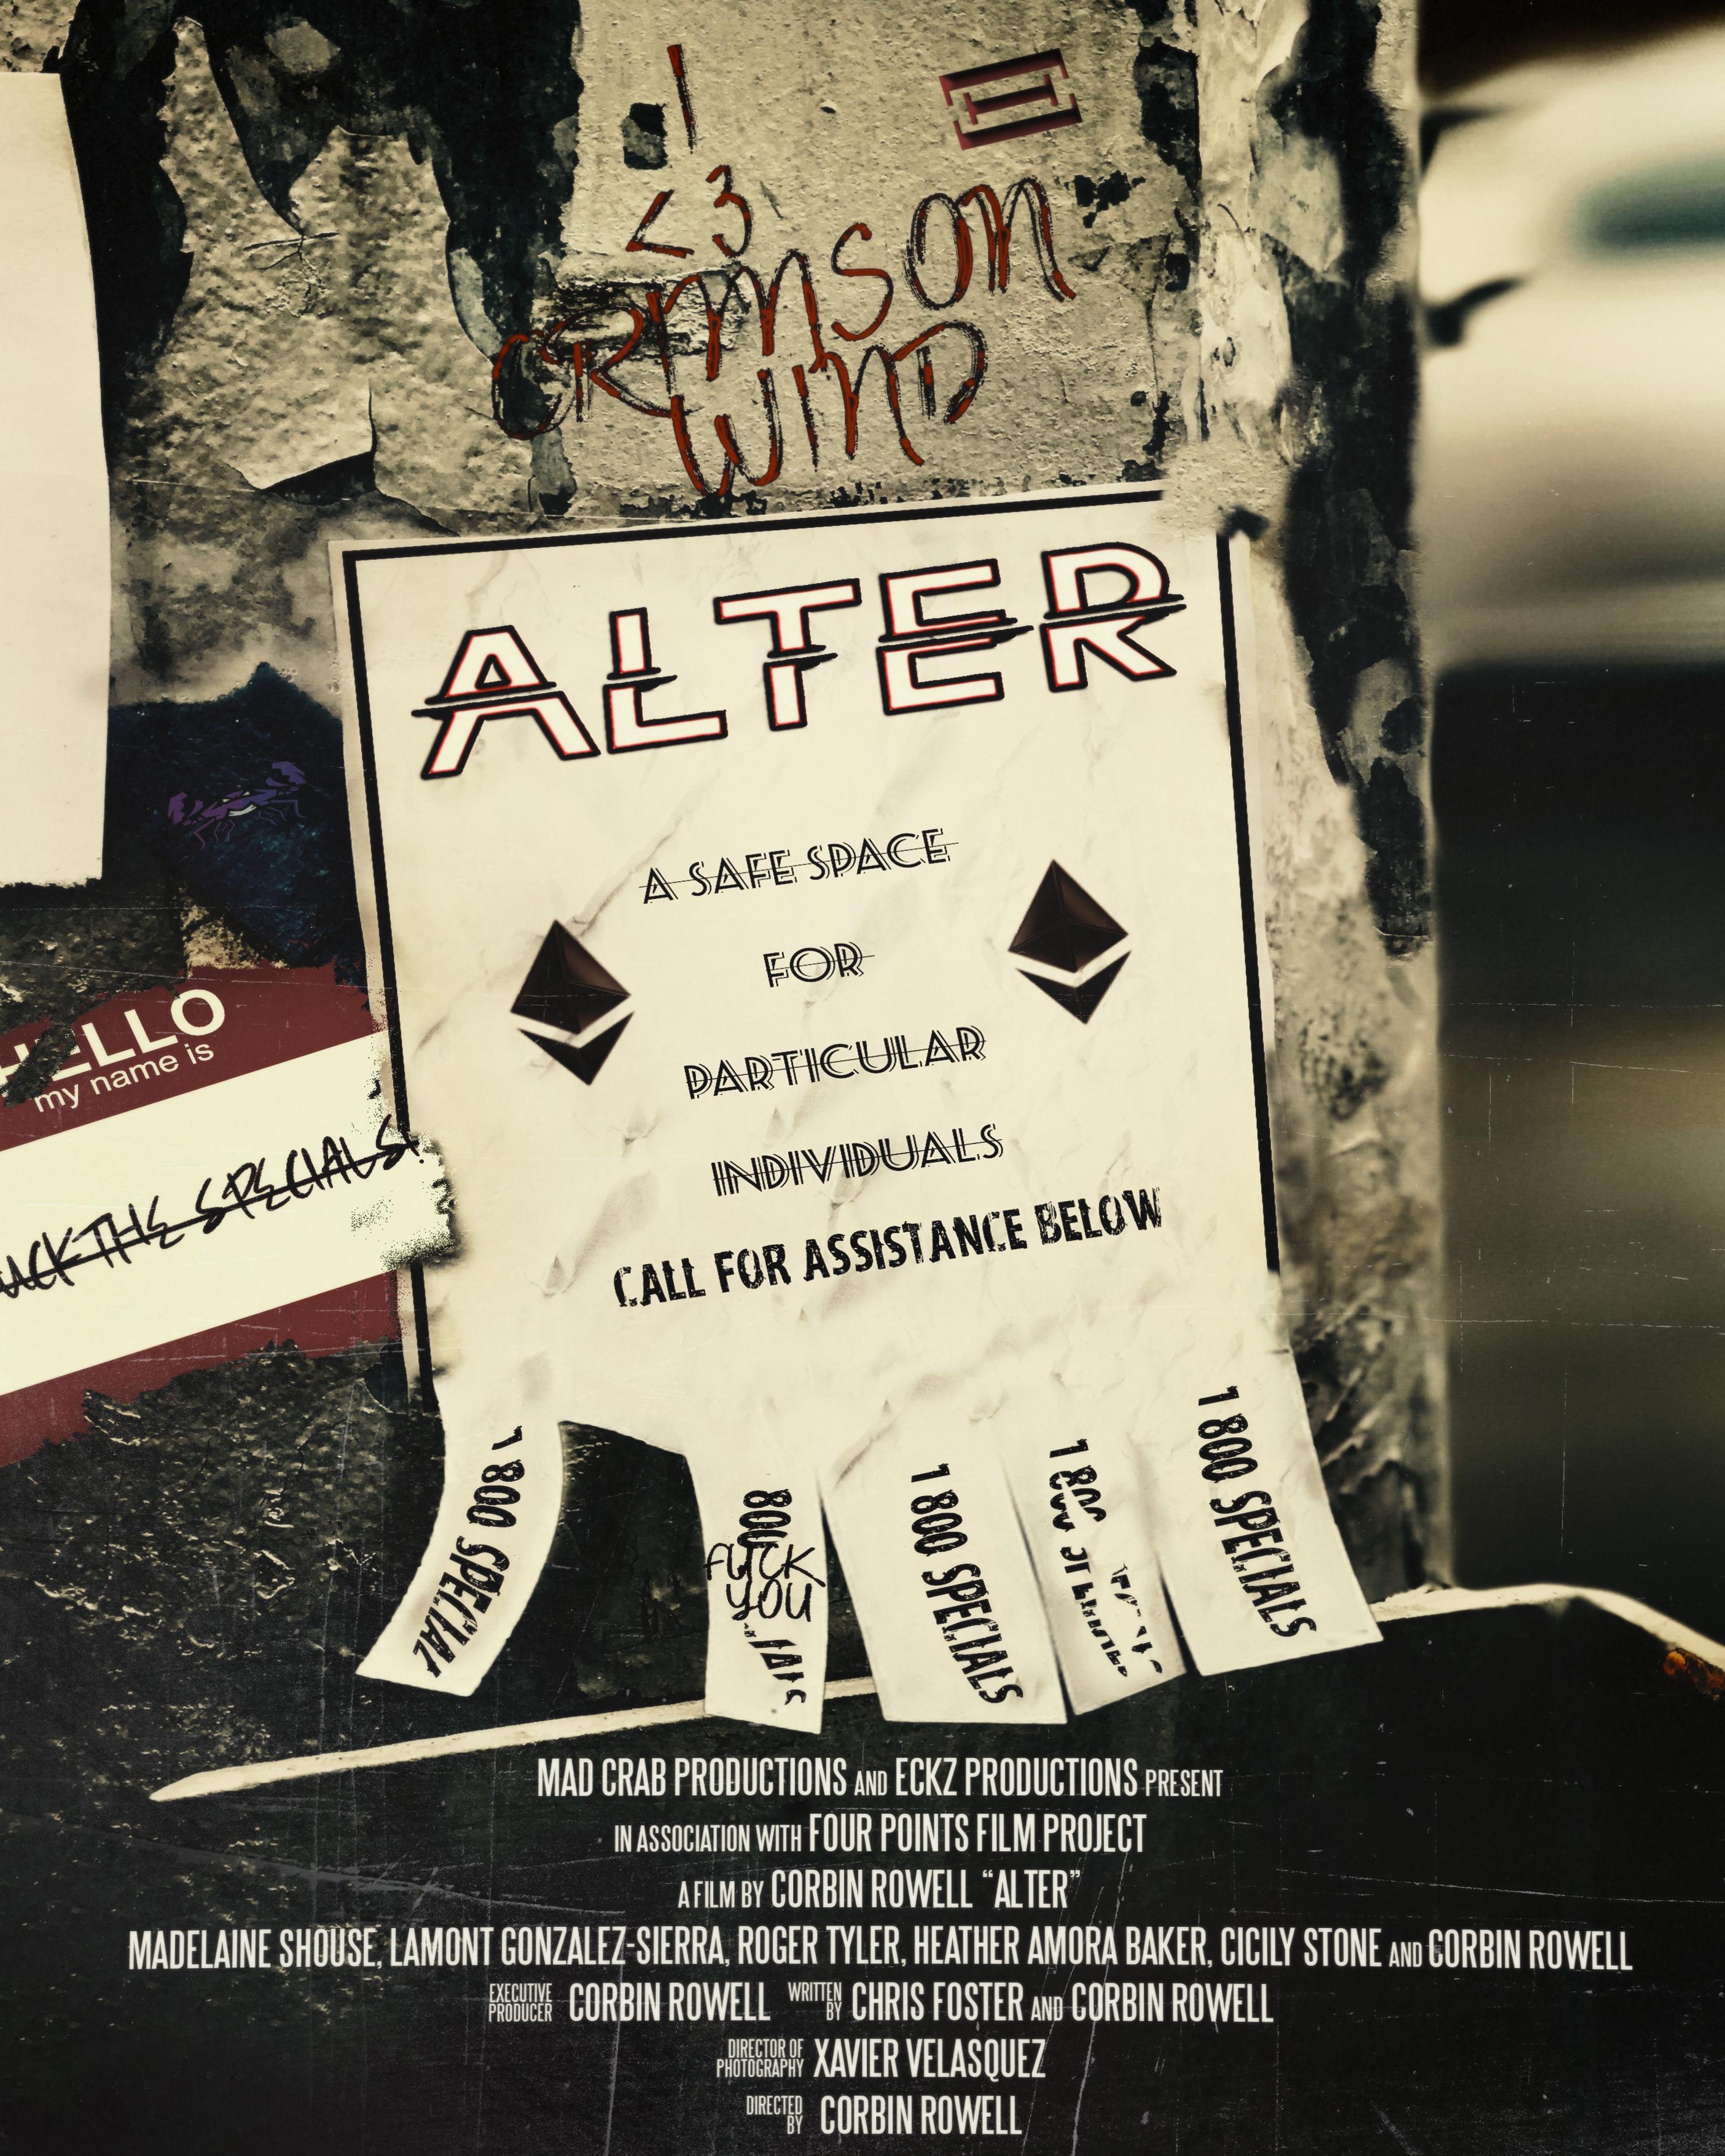 Alter (2020) постер